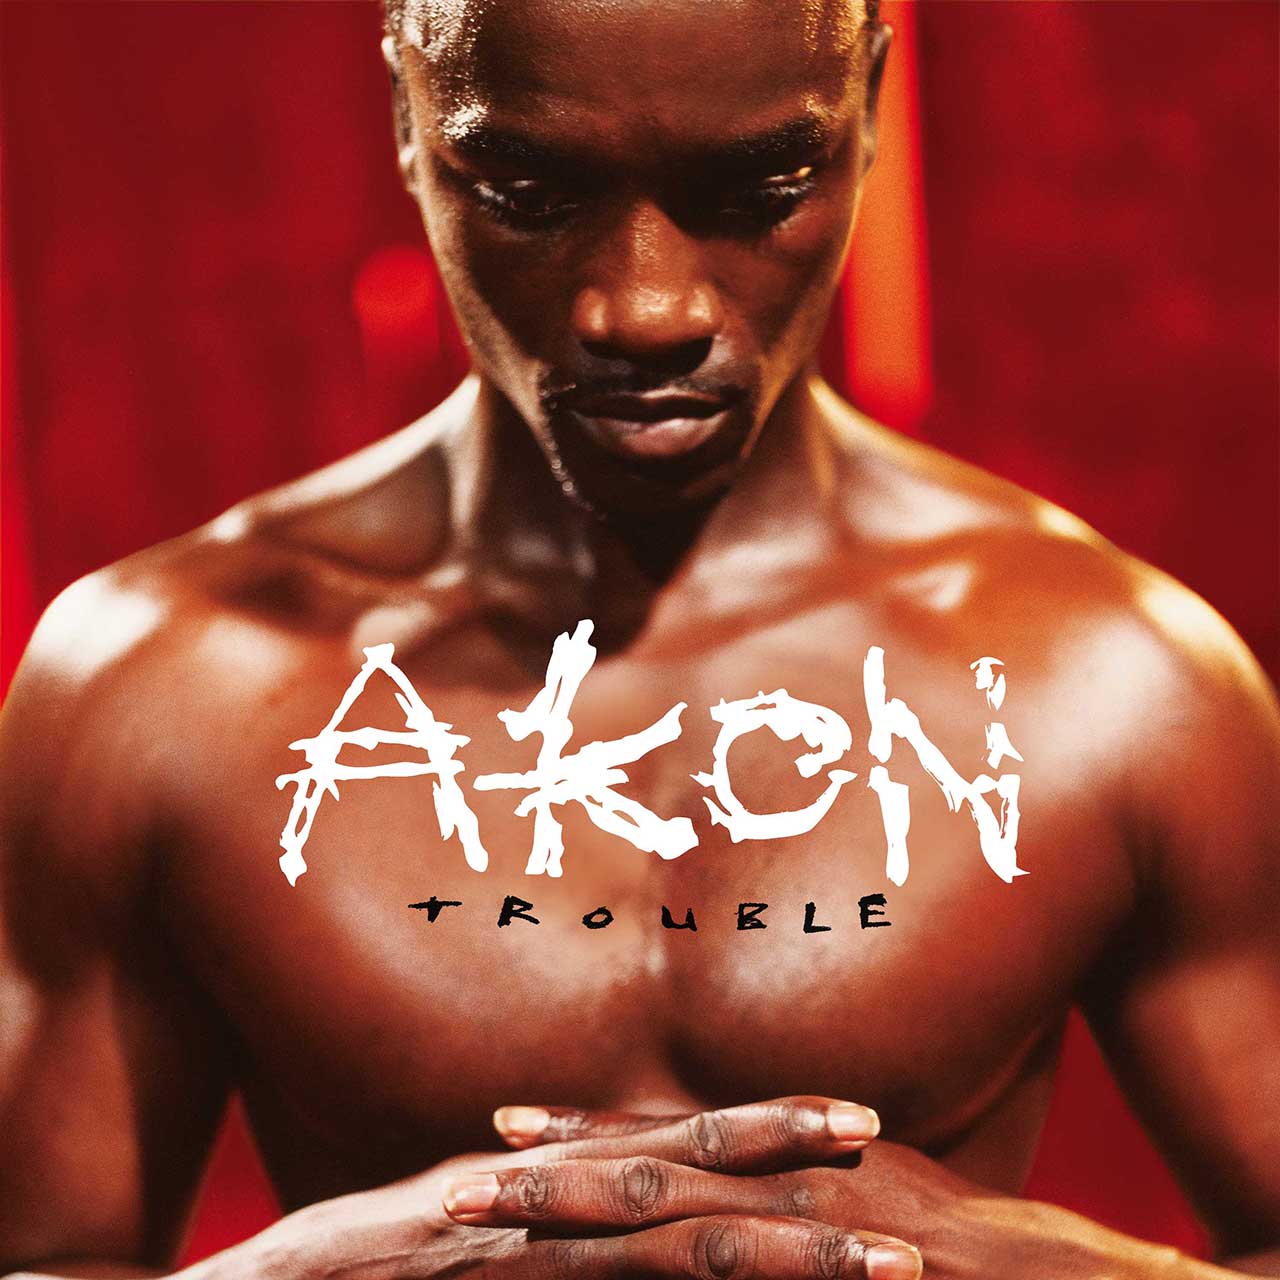 ‘Trouble’: Akon’s Breakthrough Debut Album